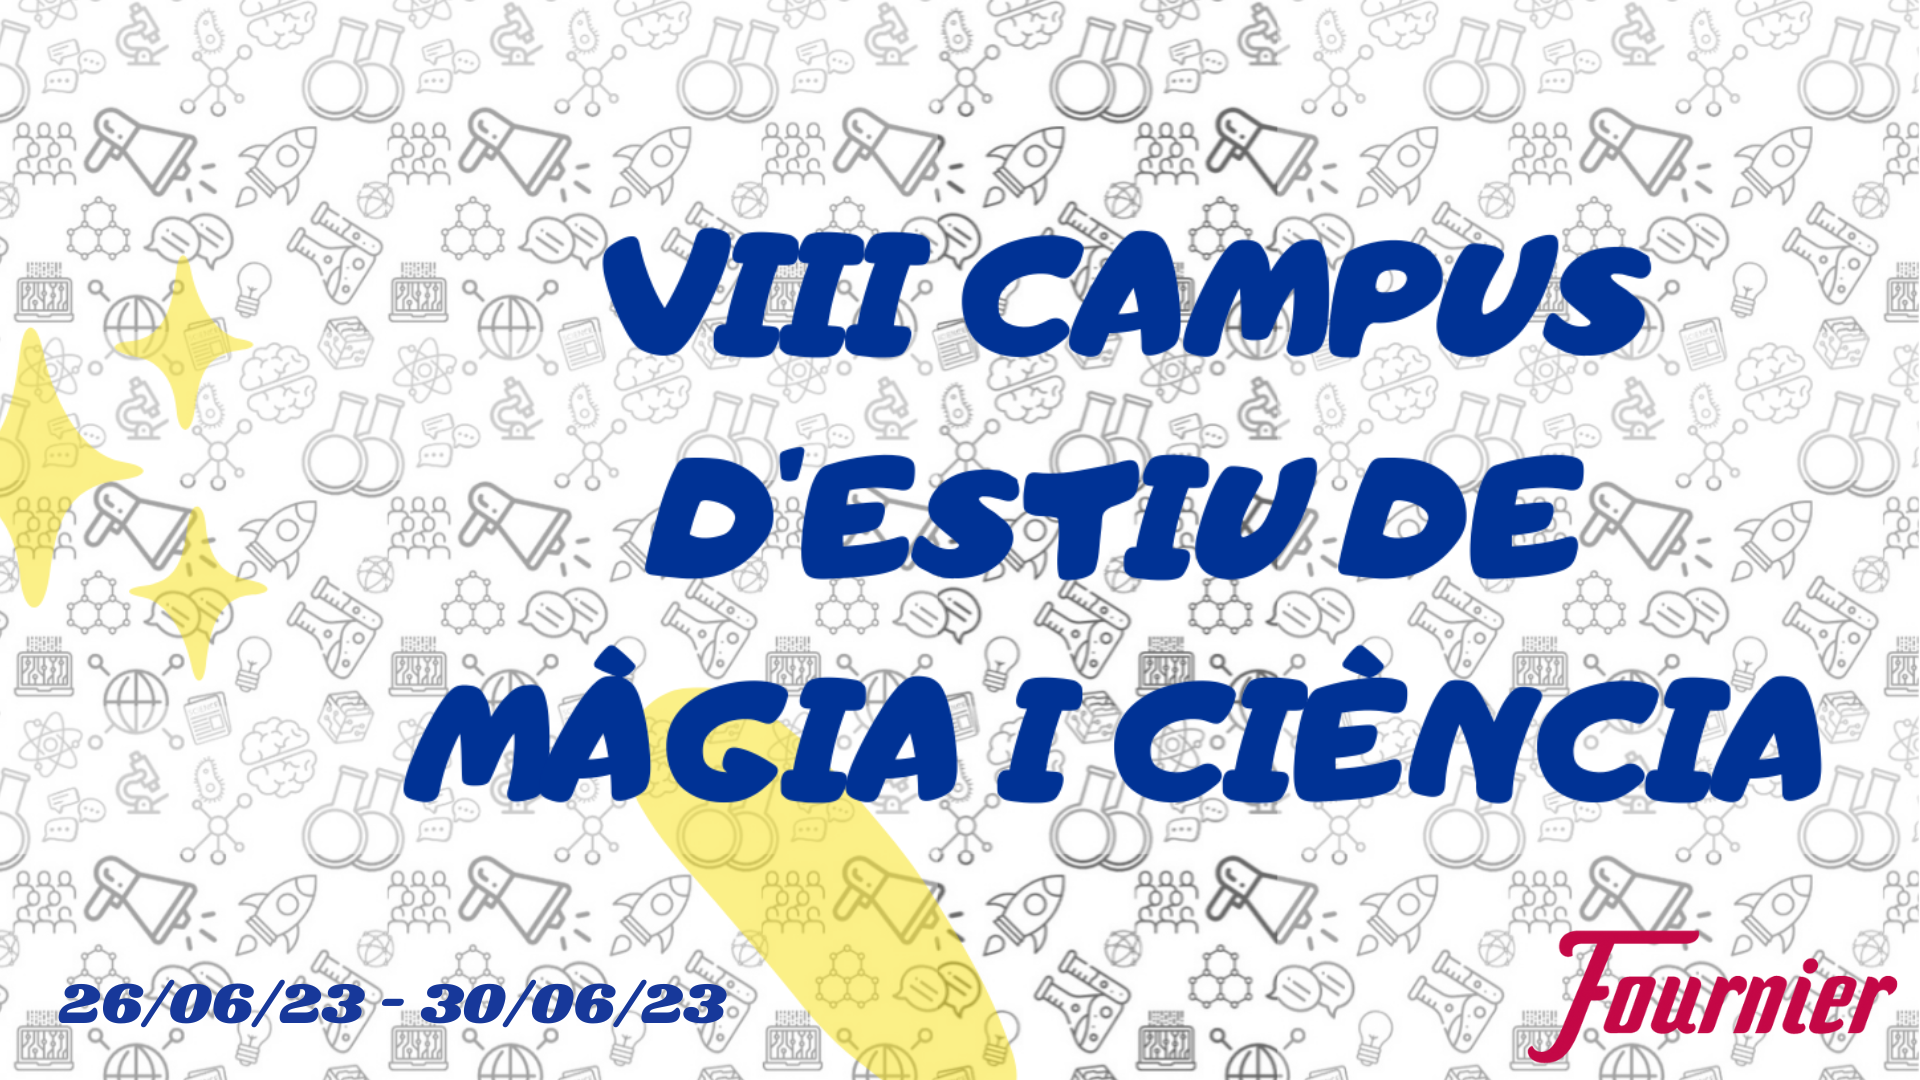 VIII Campues Magia y Ciencia Girona